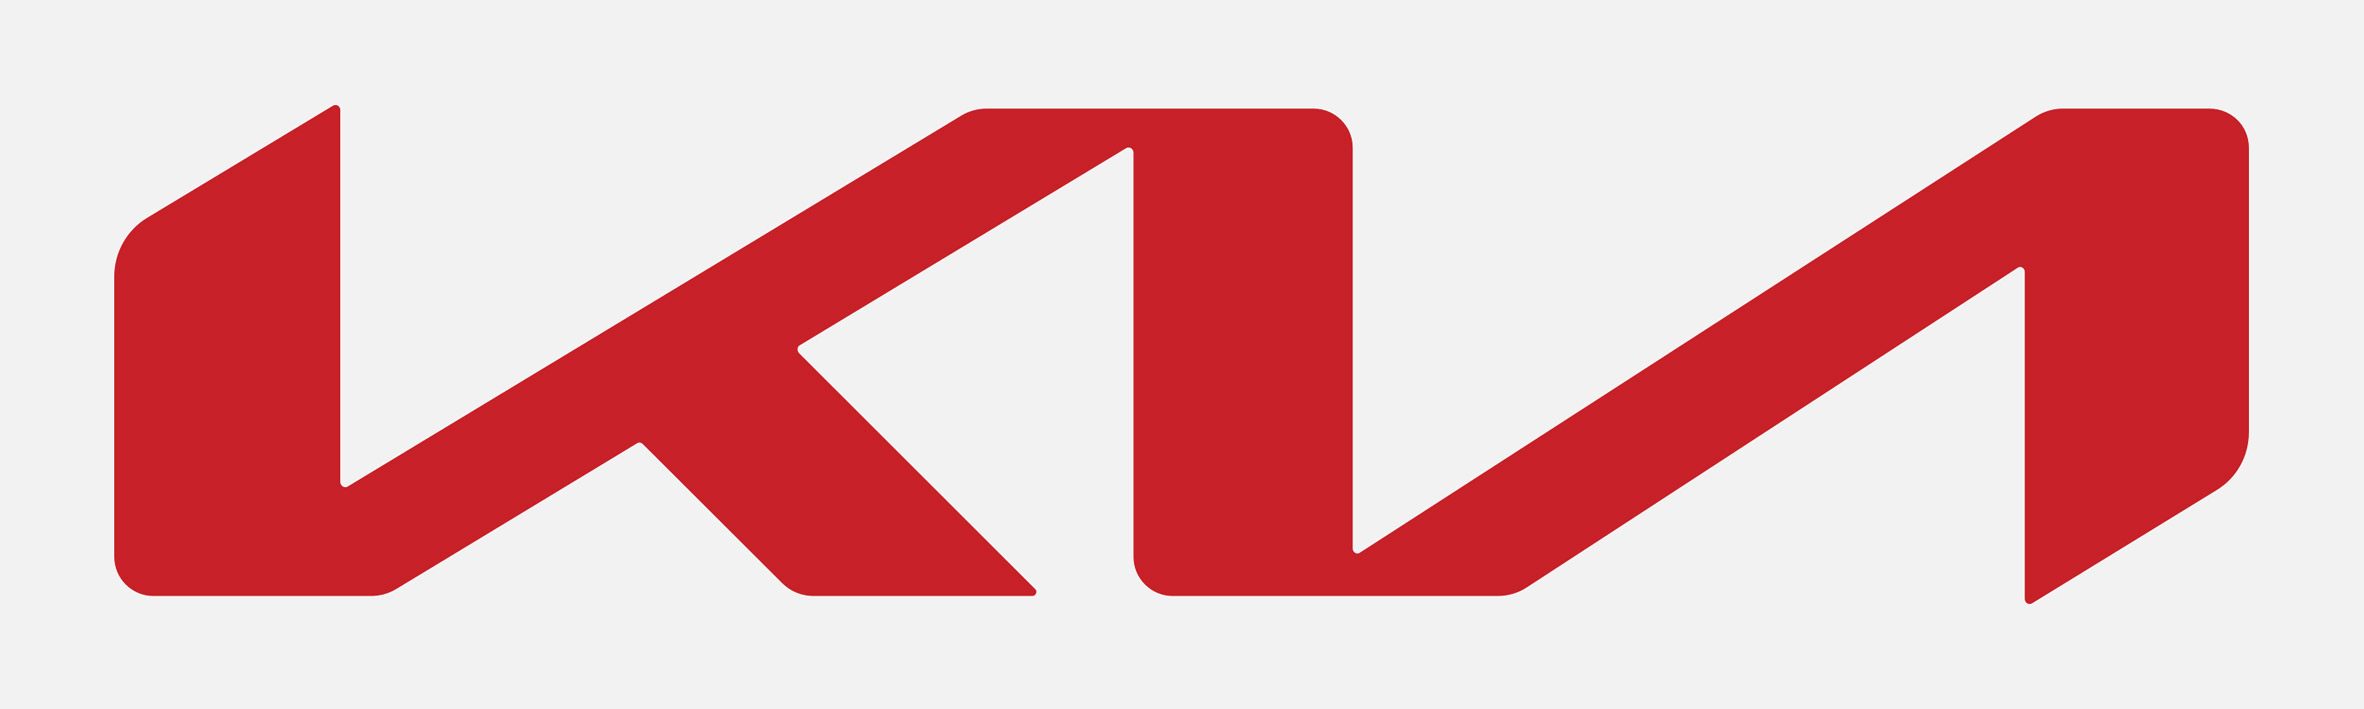 Новый логотип KIA